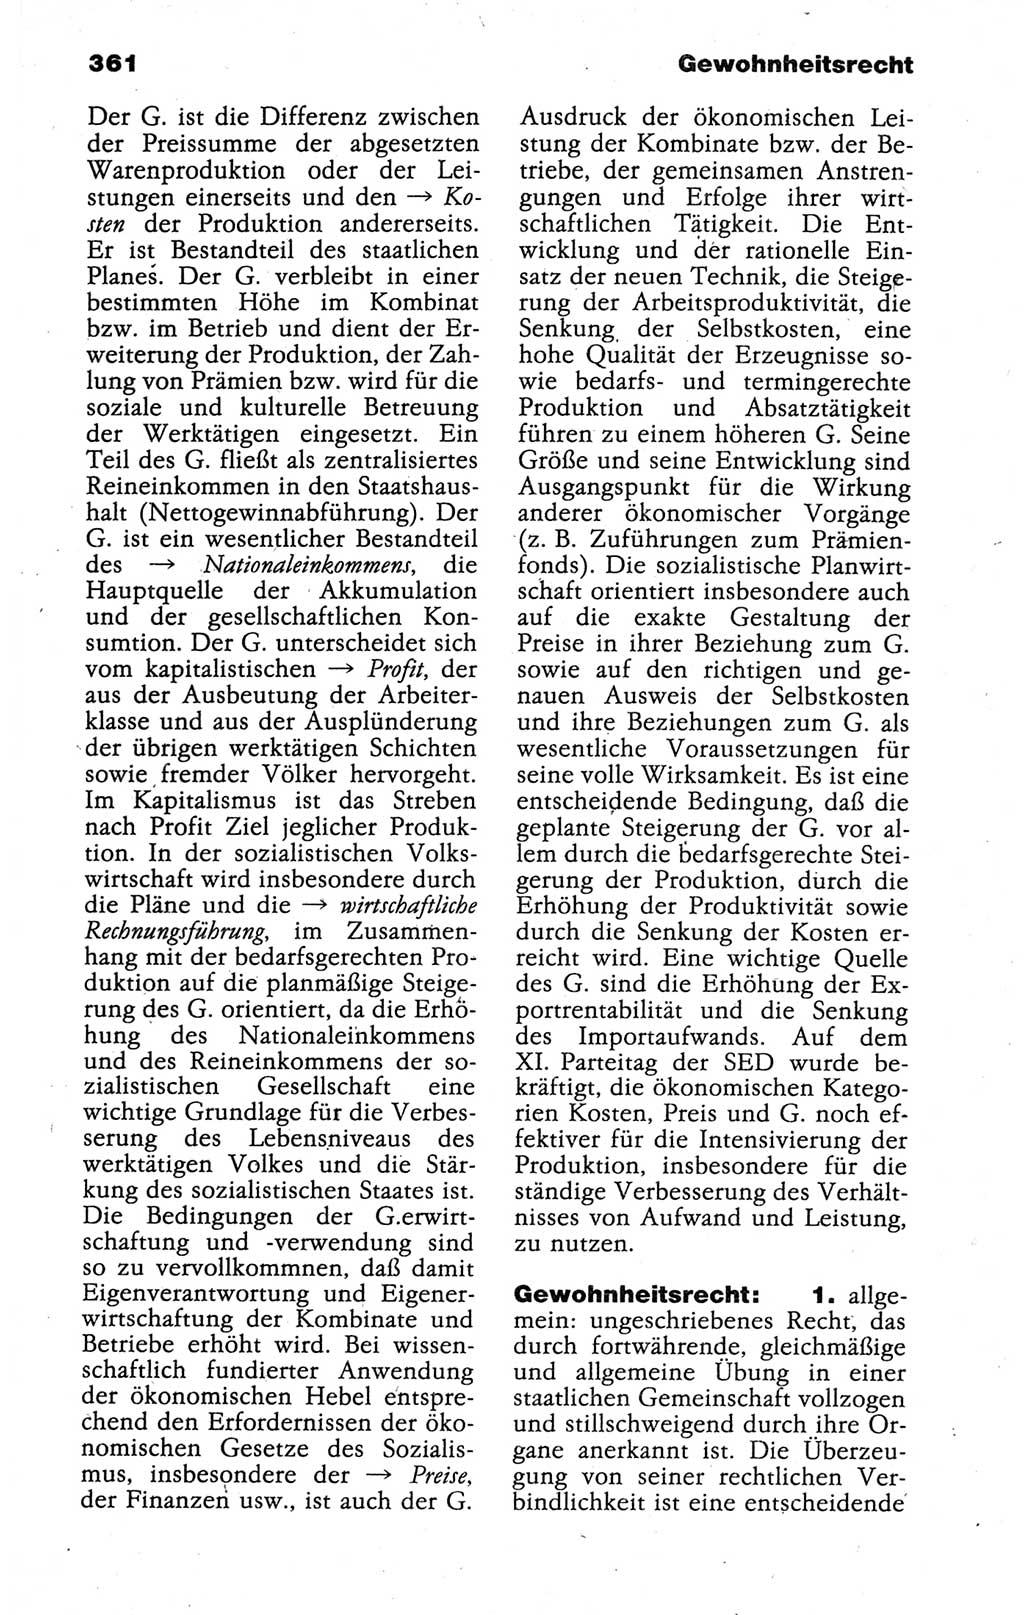 Kleines politisches Wörterbuch [Deutsche Demokratische Republik (DDR)] 1988, Seite 361 (Kl. pol. Wb. DDR 1988, S. 361)